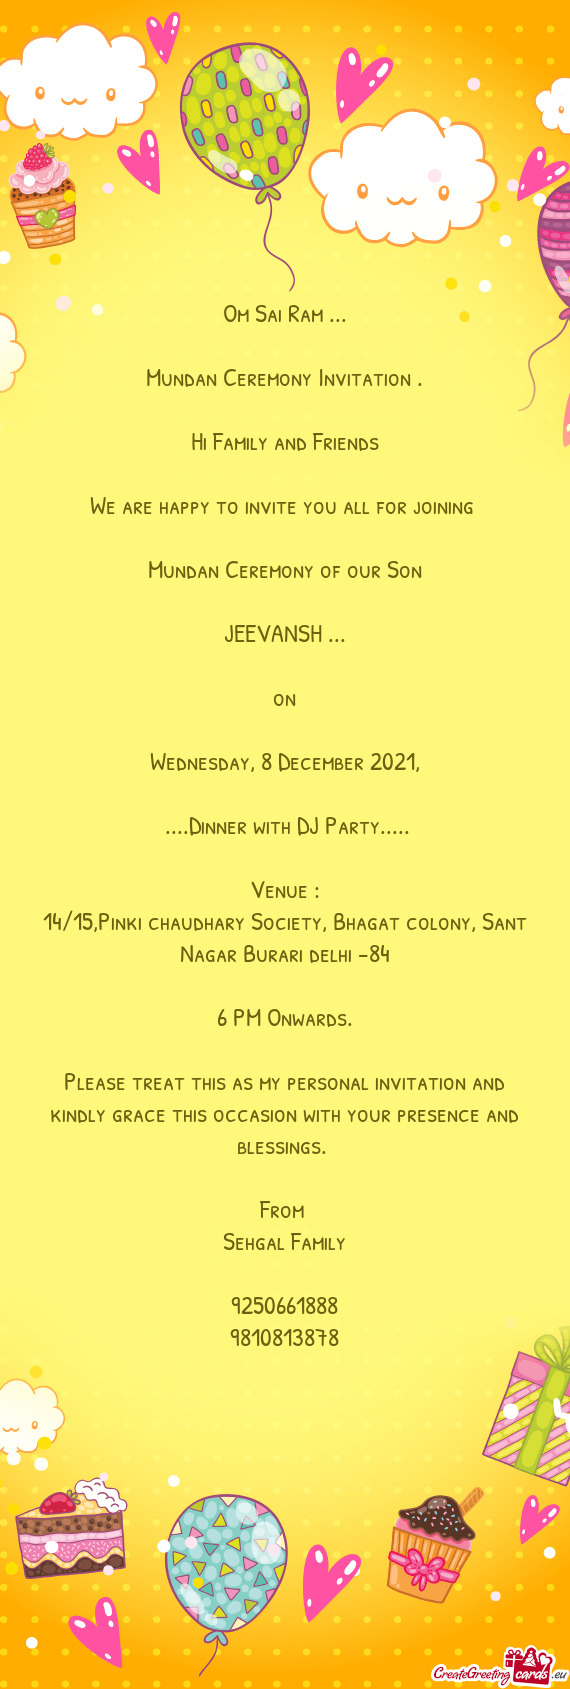 14/15,Pinki chaudhary Society, Bhagat colony, Sant Nagar Burari delhi -84